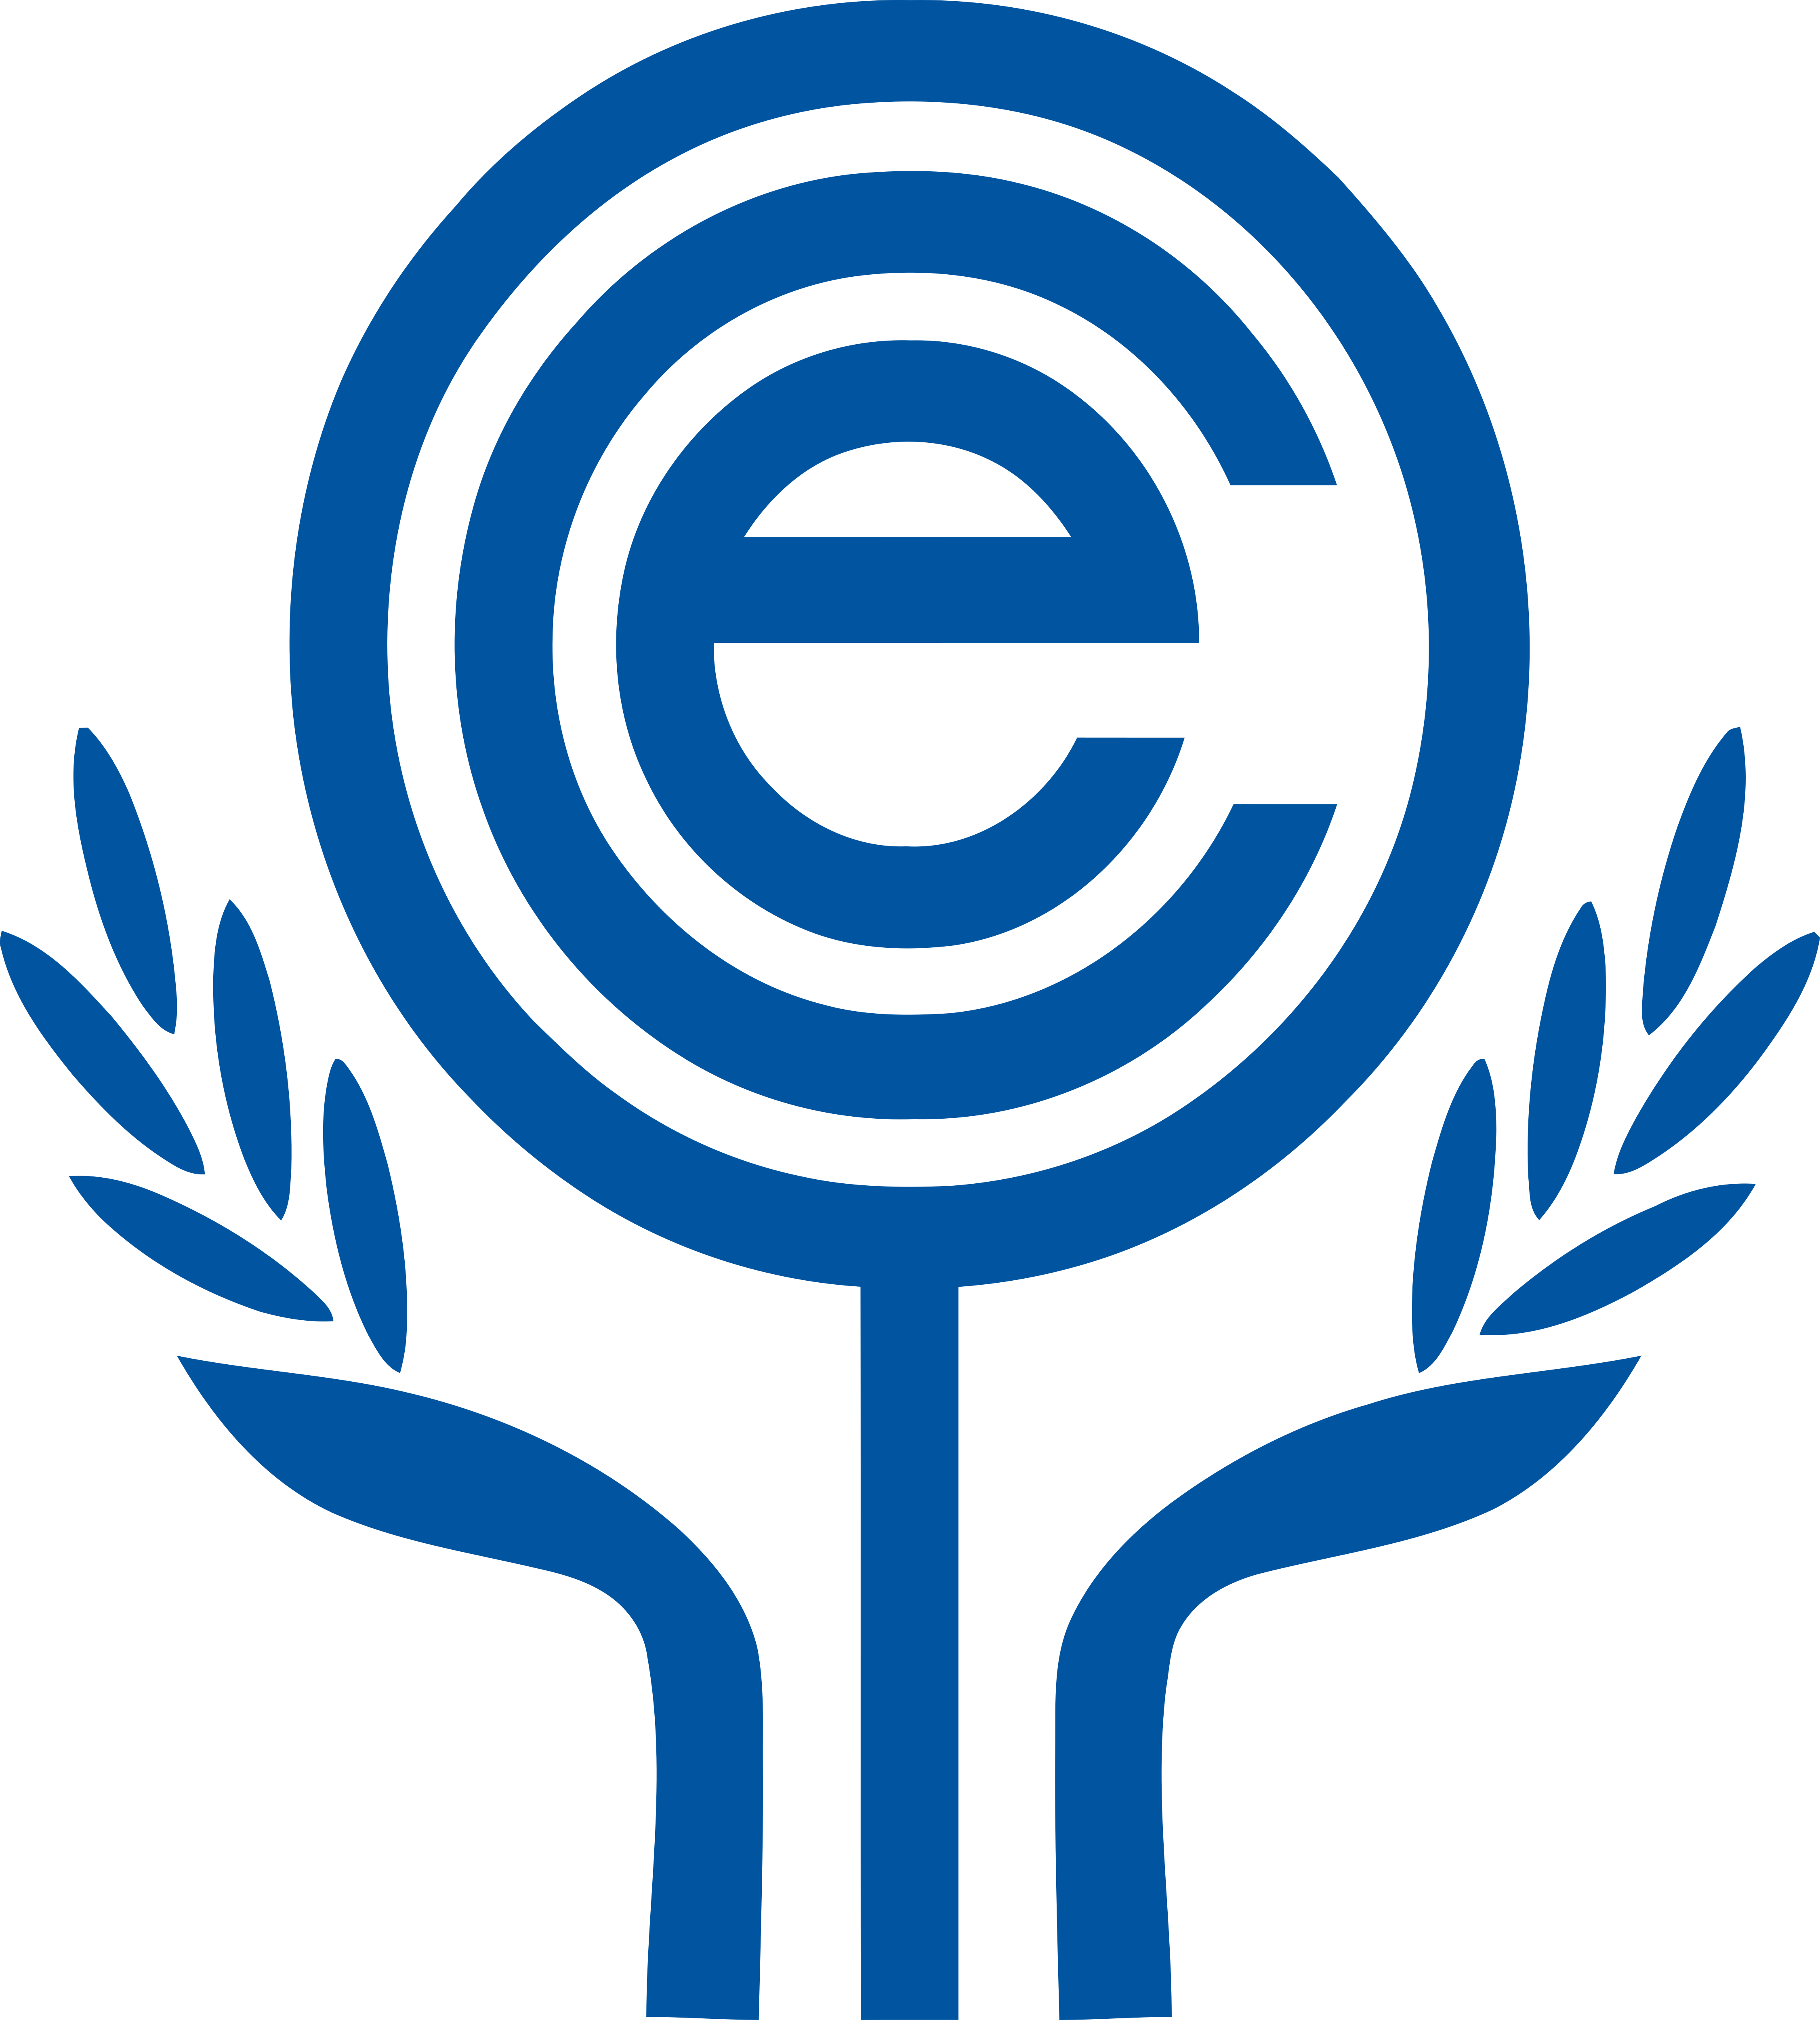 Organization Logo - Economic Cooperation Organization – Logos Download